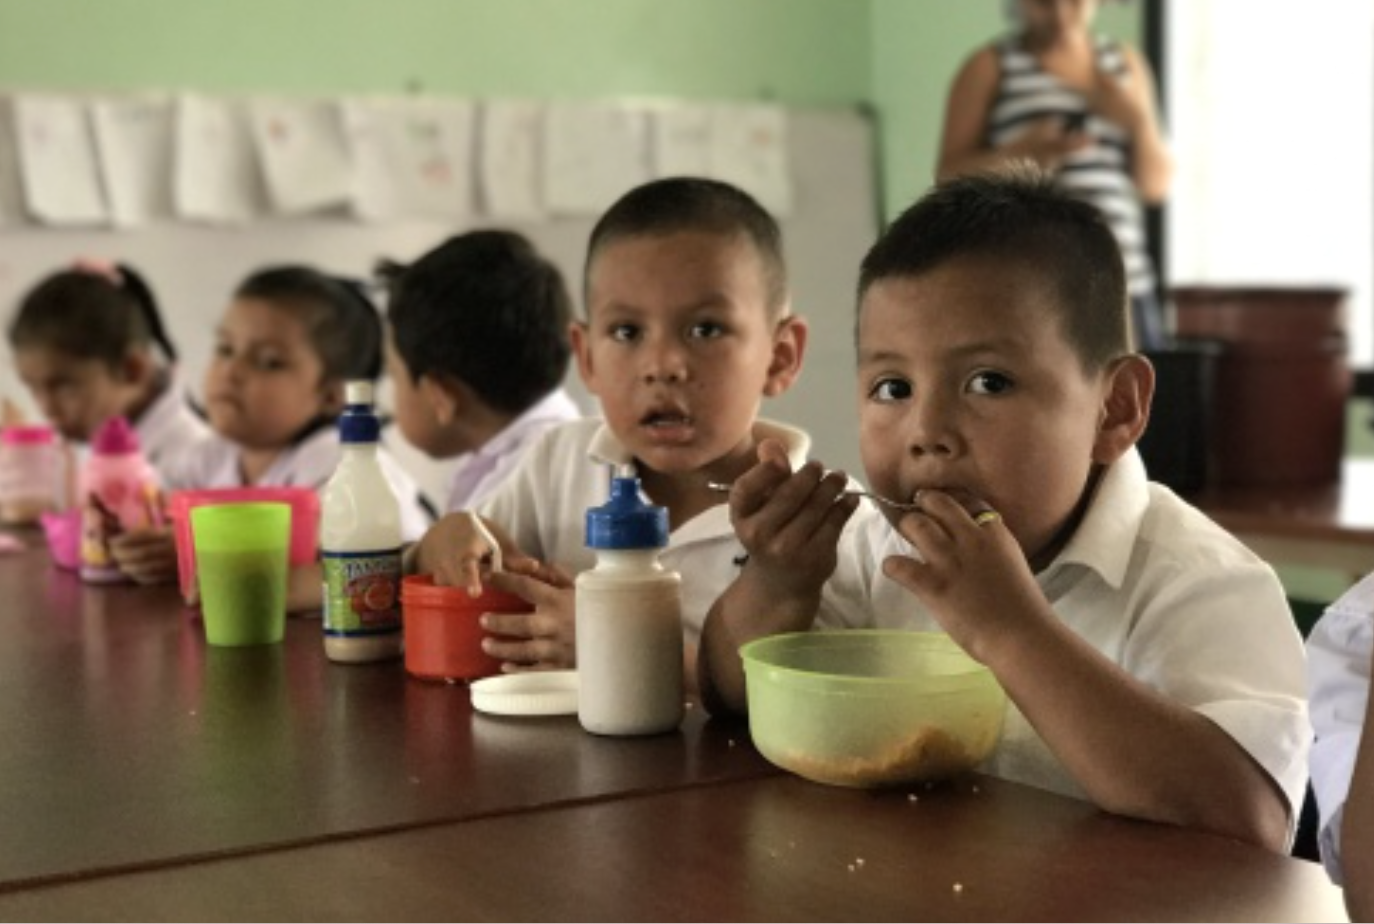 school meals Nicaragua